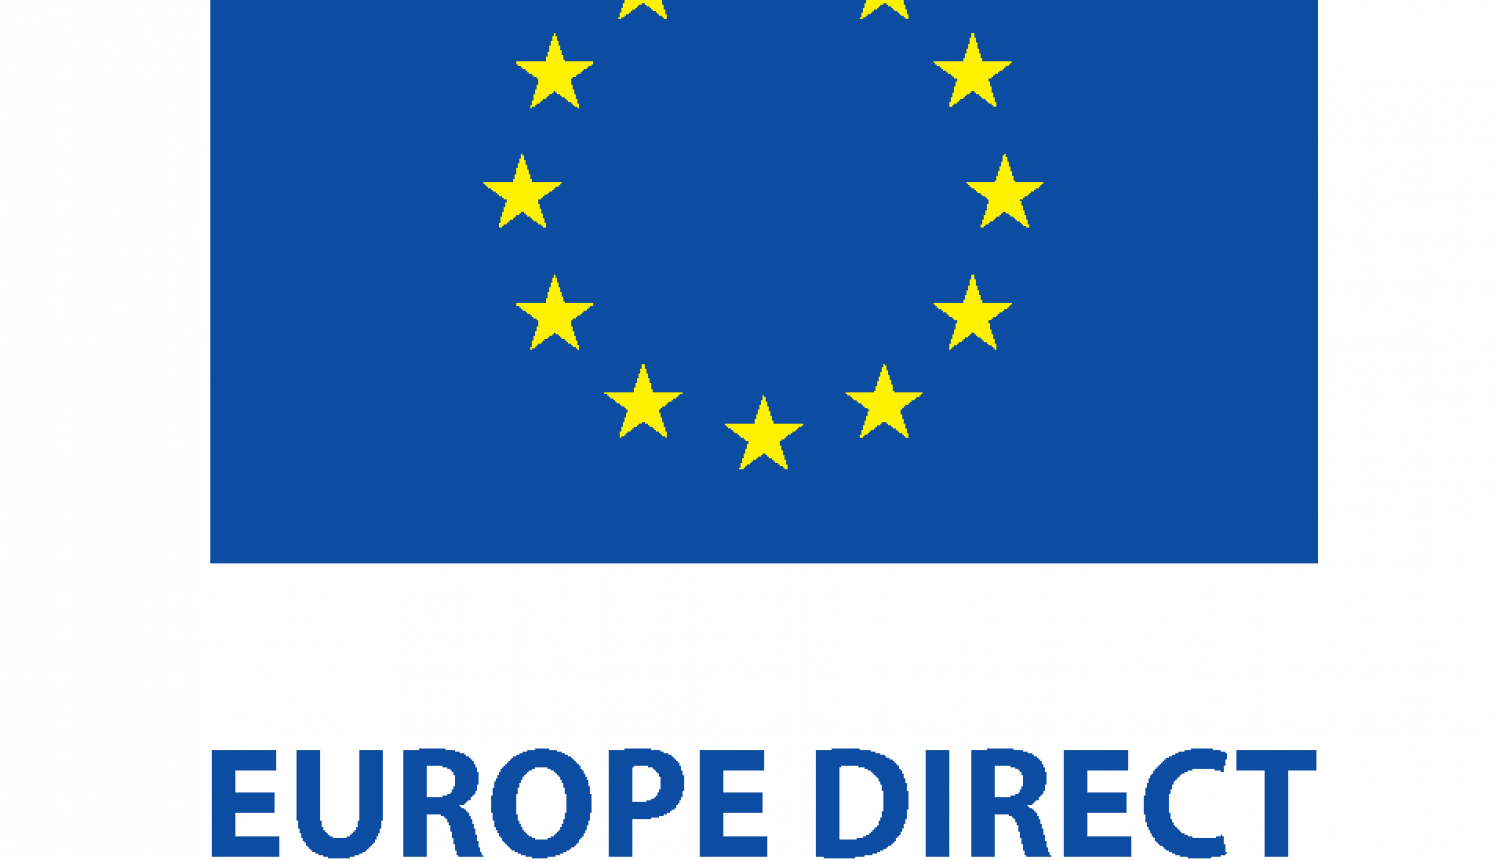 Europe Direct logo